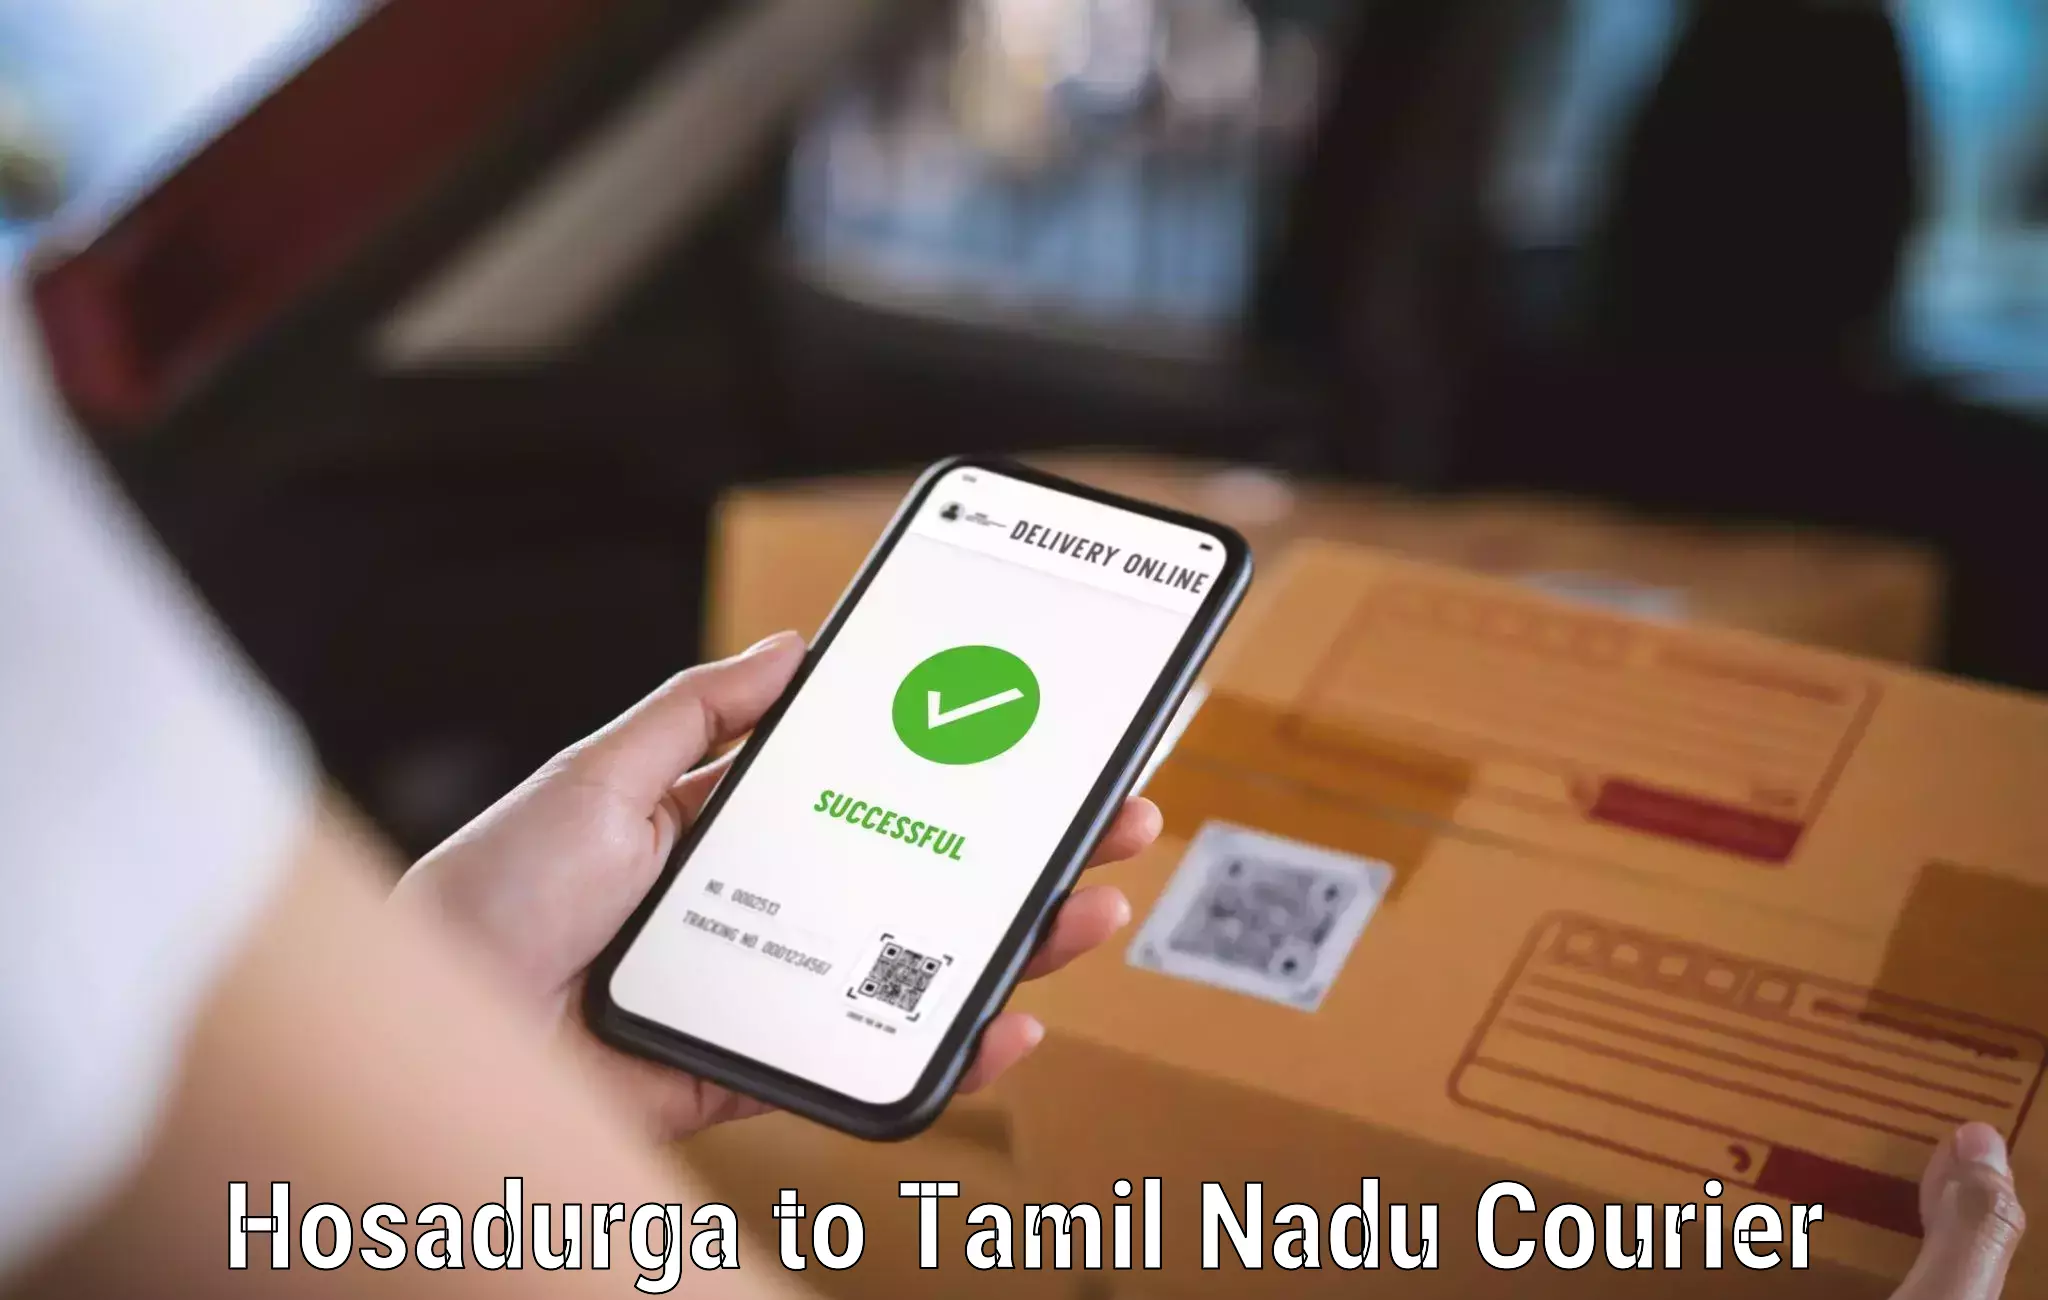 Courier service booking Hosadurga to Perundurai